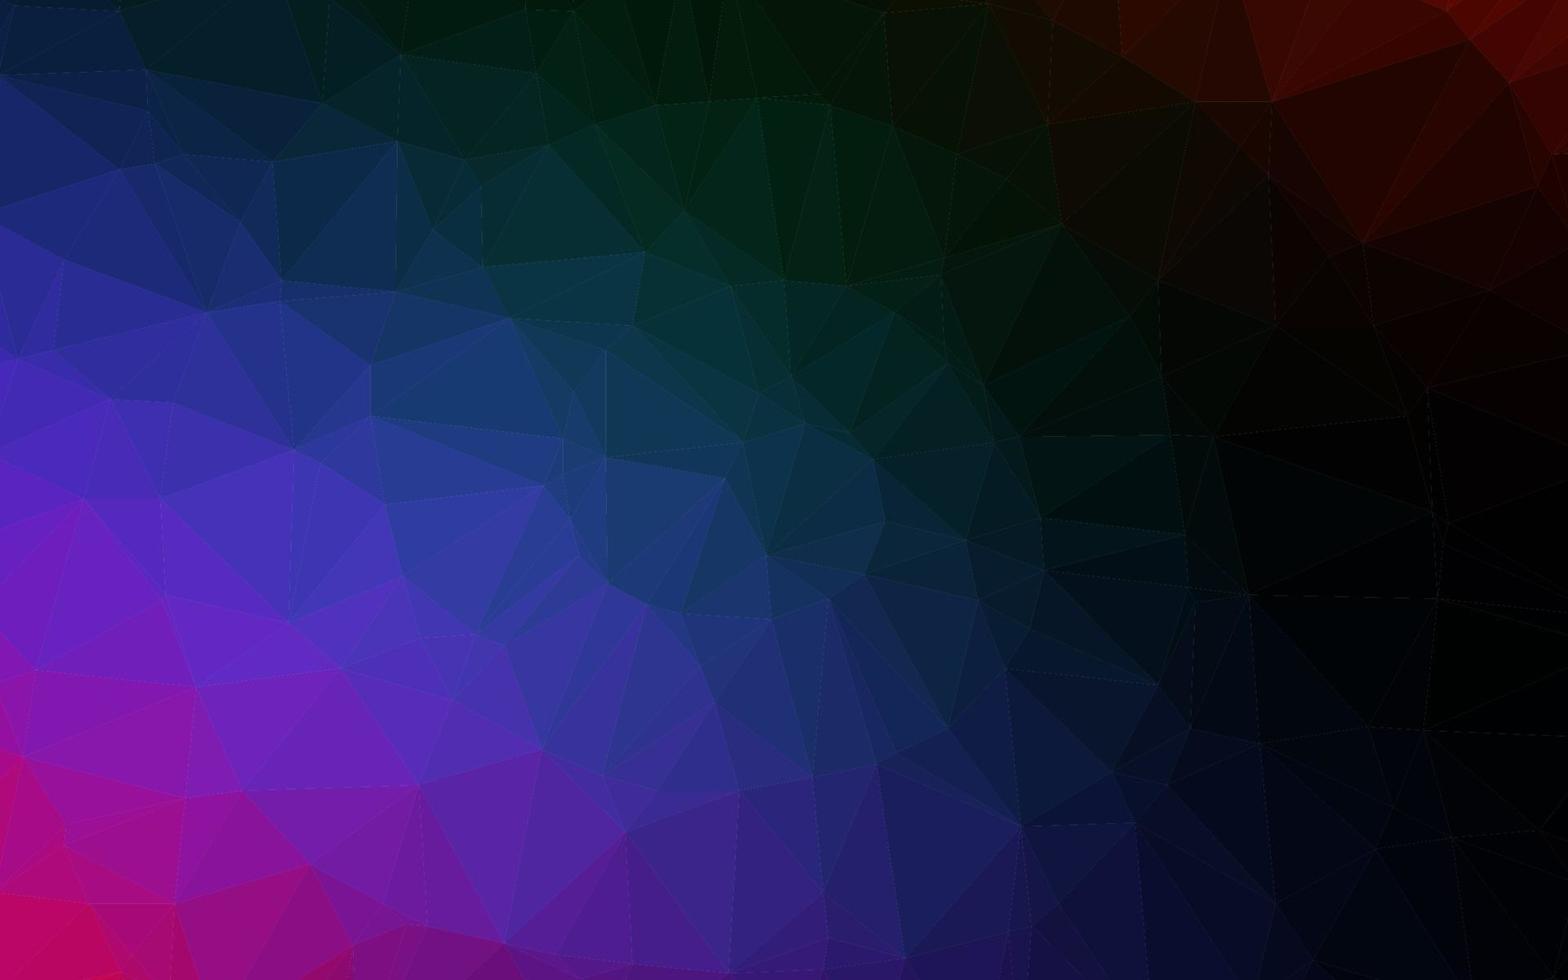 donkere veelkleurige, regenboog vector veelhoek abstracte lay-out.